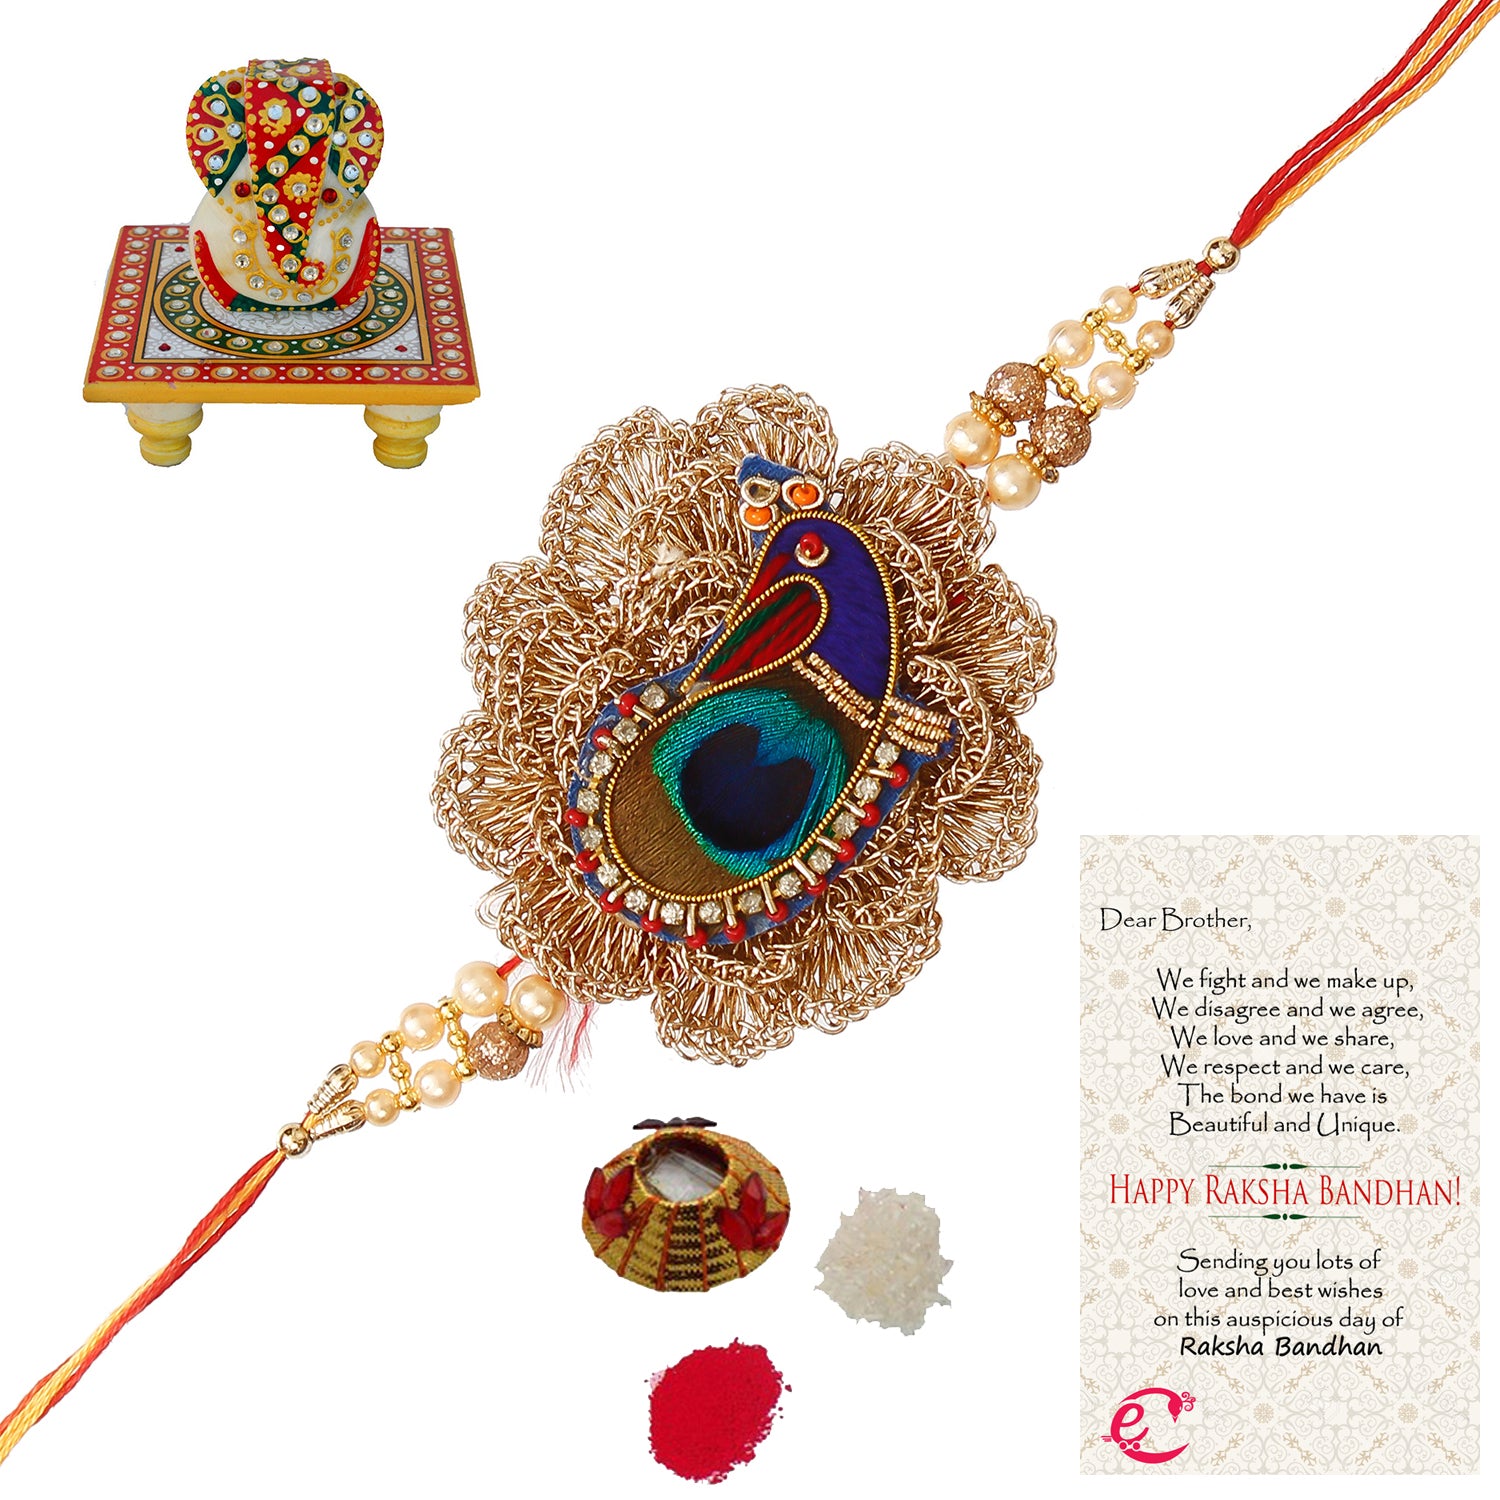 Designer Peacock Rakhi with Lord Ganesha on Kundan Studded Marble Chowki and Roli Tikka Matki, Best Wishes Greeting Card